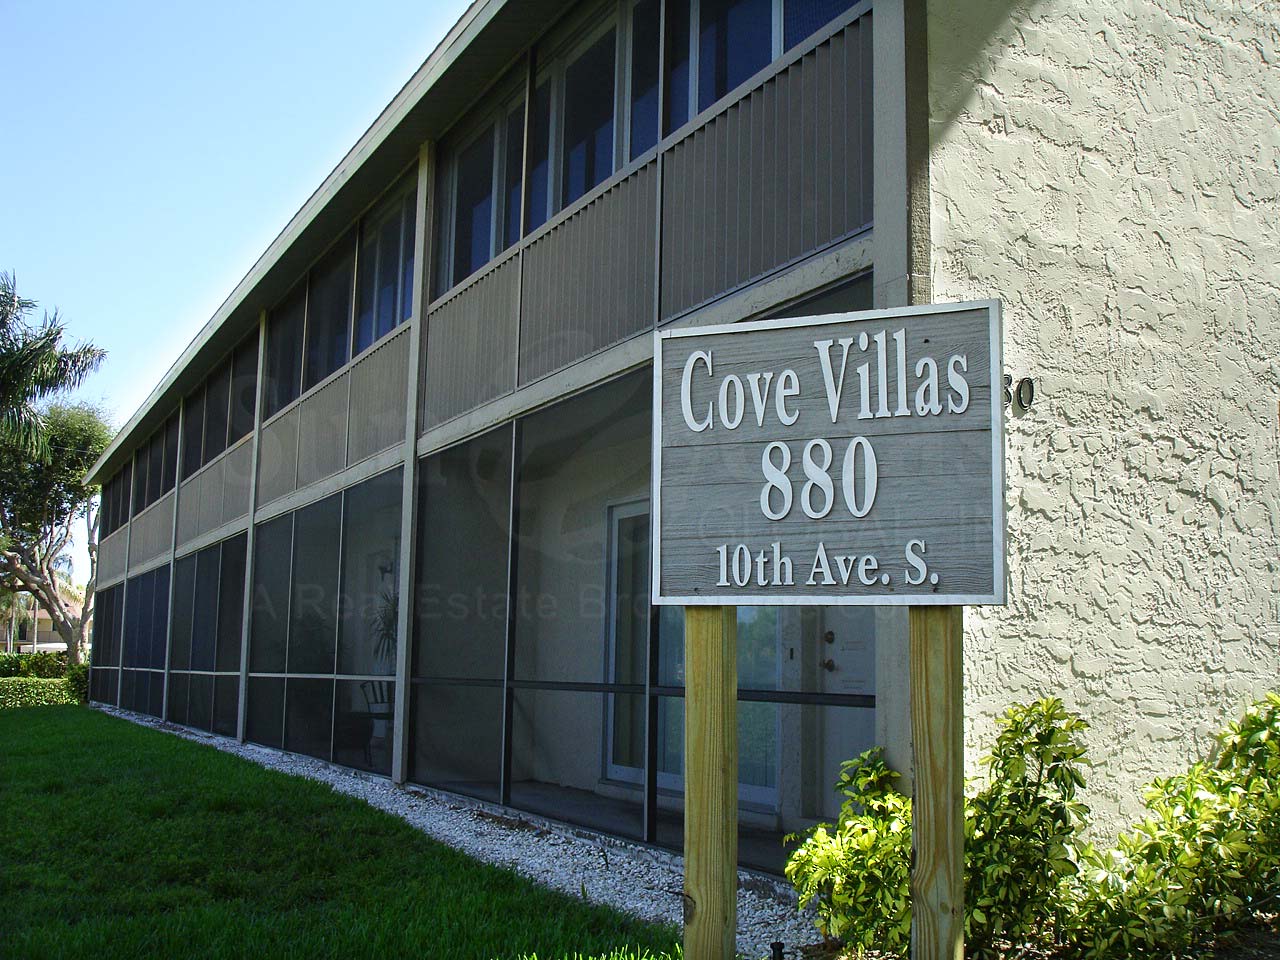 Cove Villas Condos